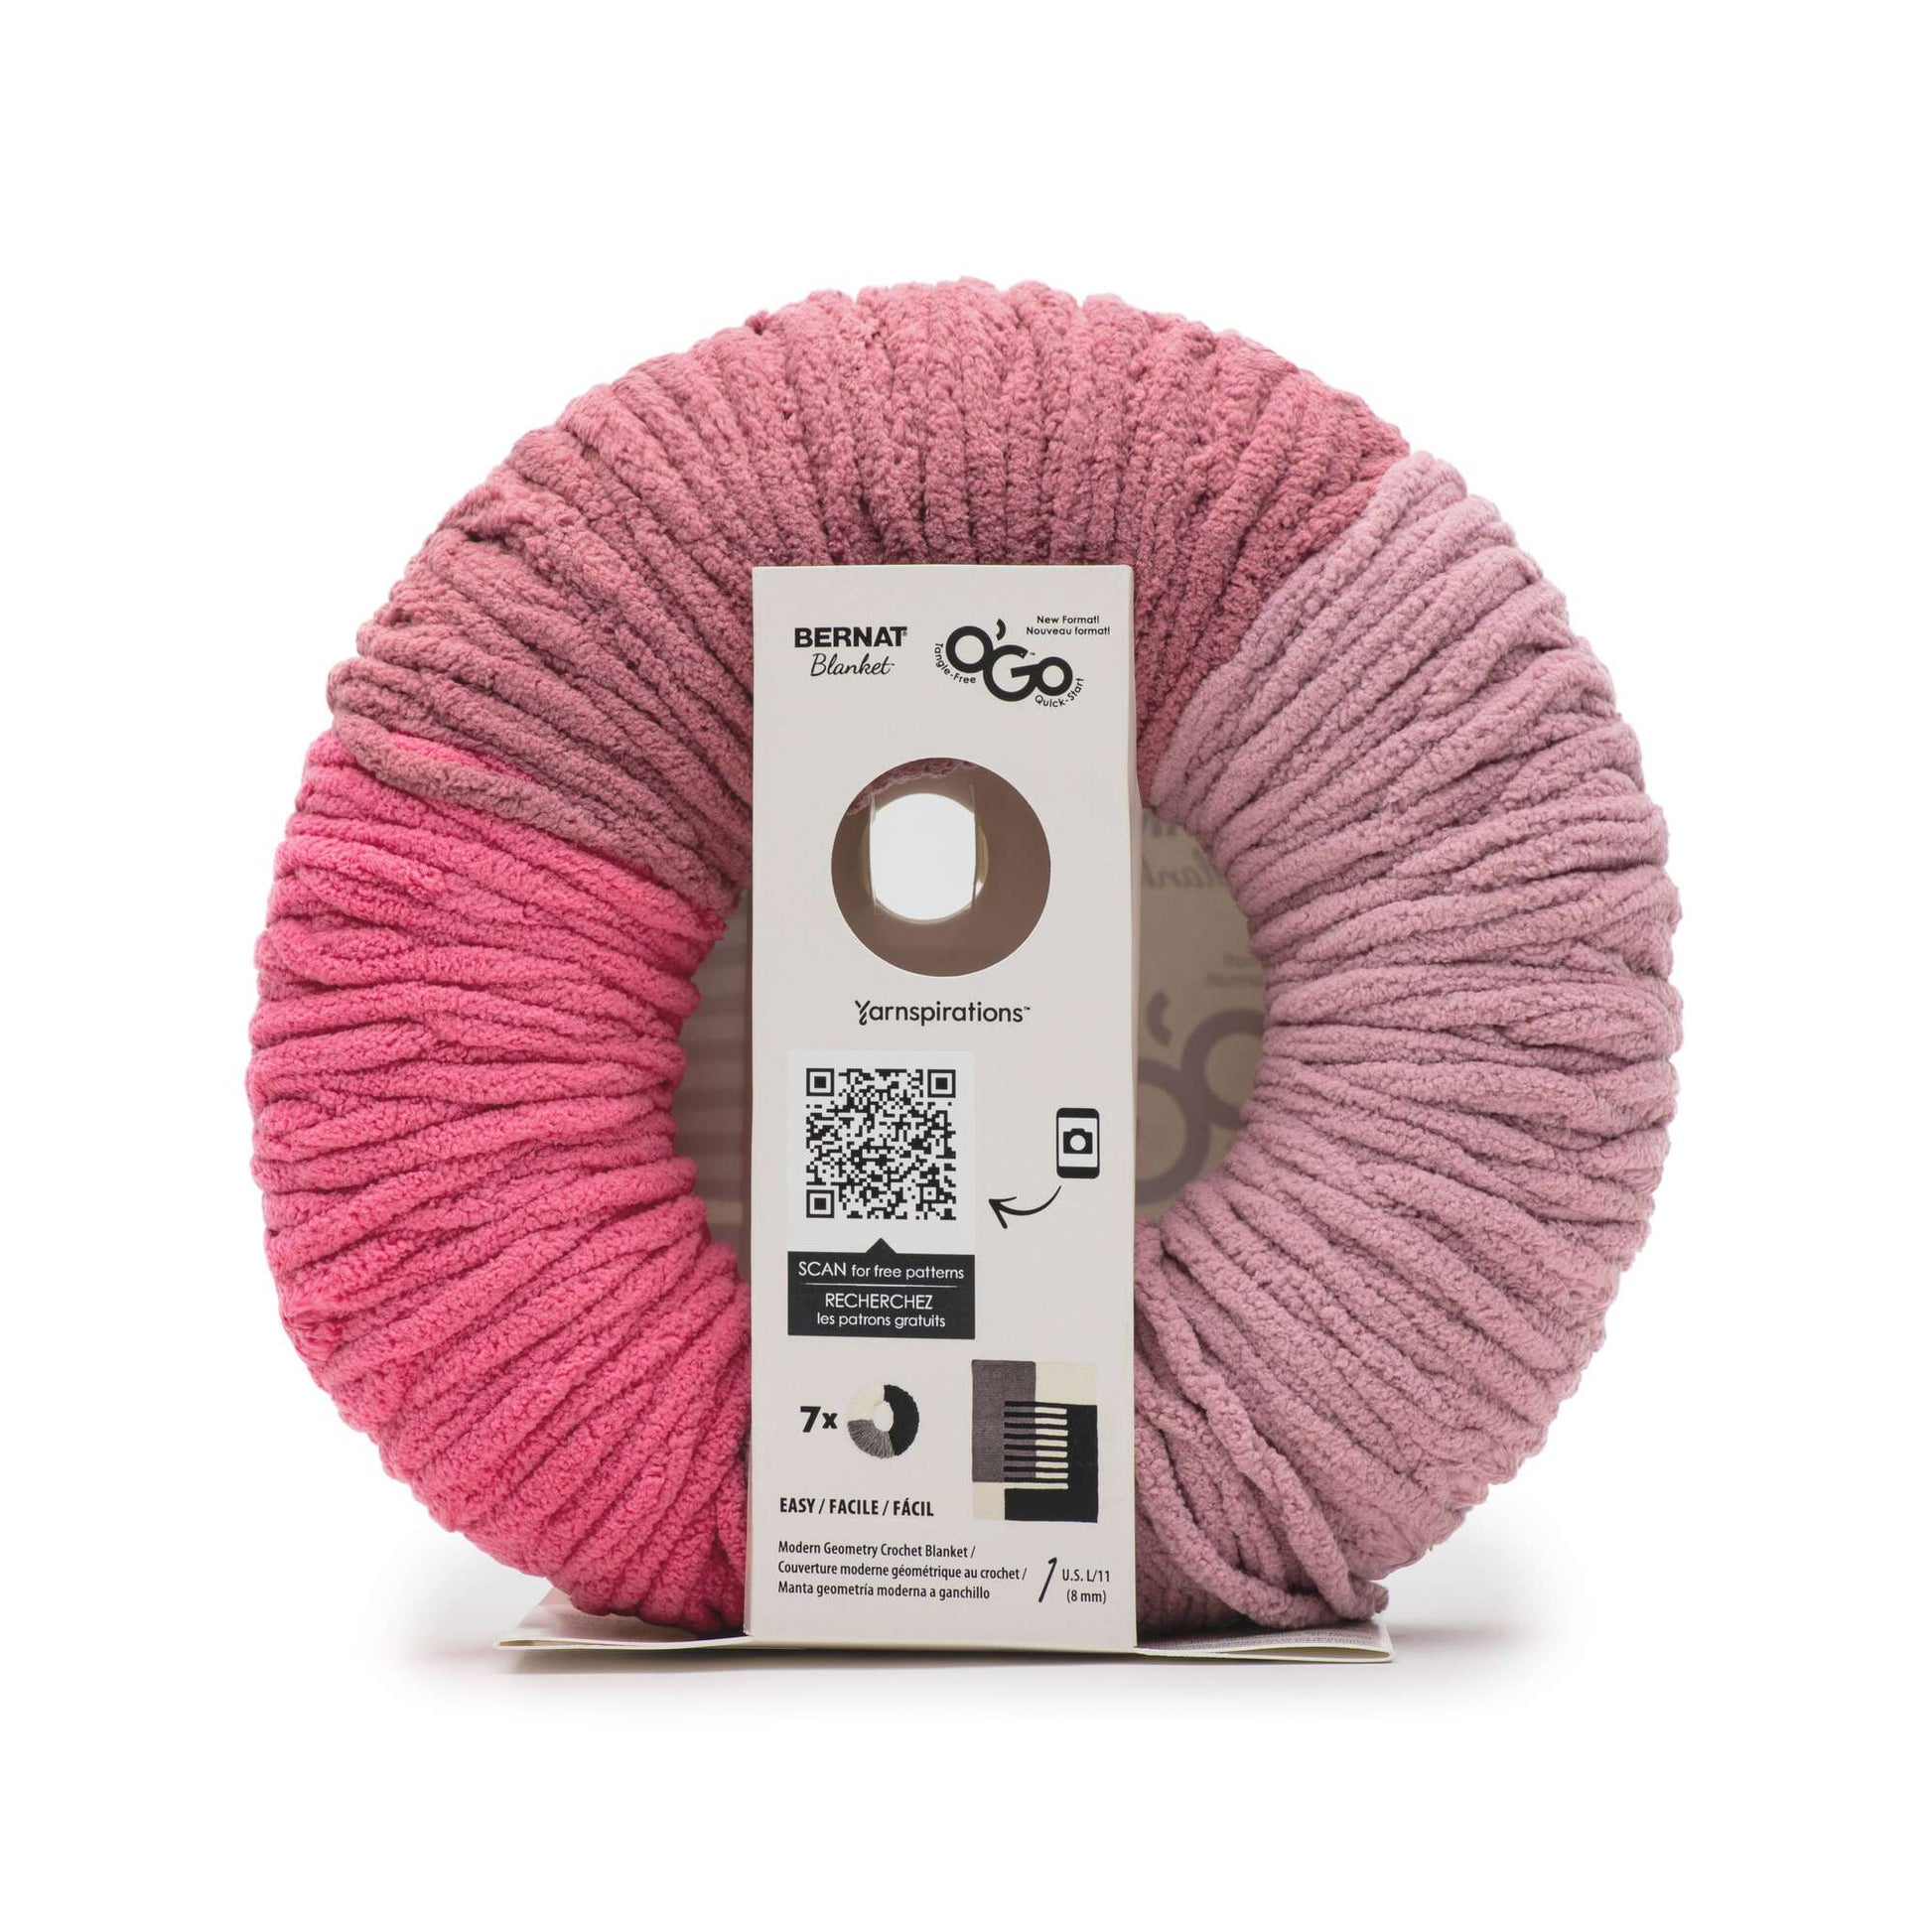 Blanket O'Go - 300g - Bernat – Len's Mill